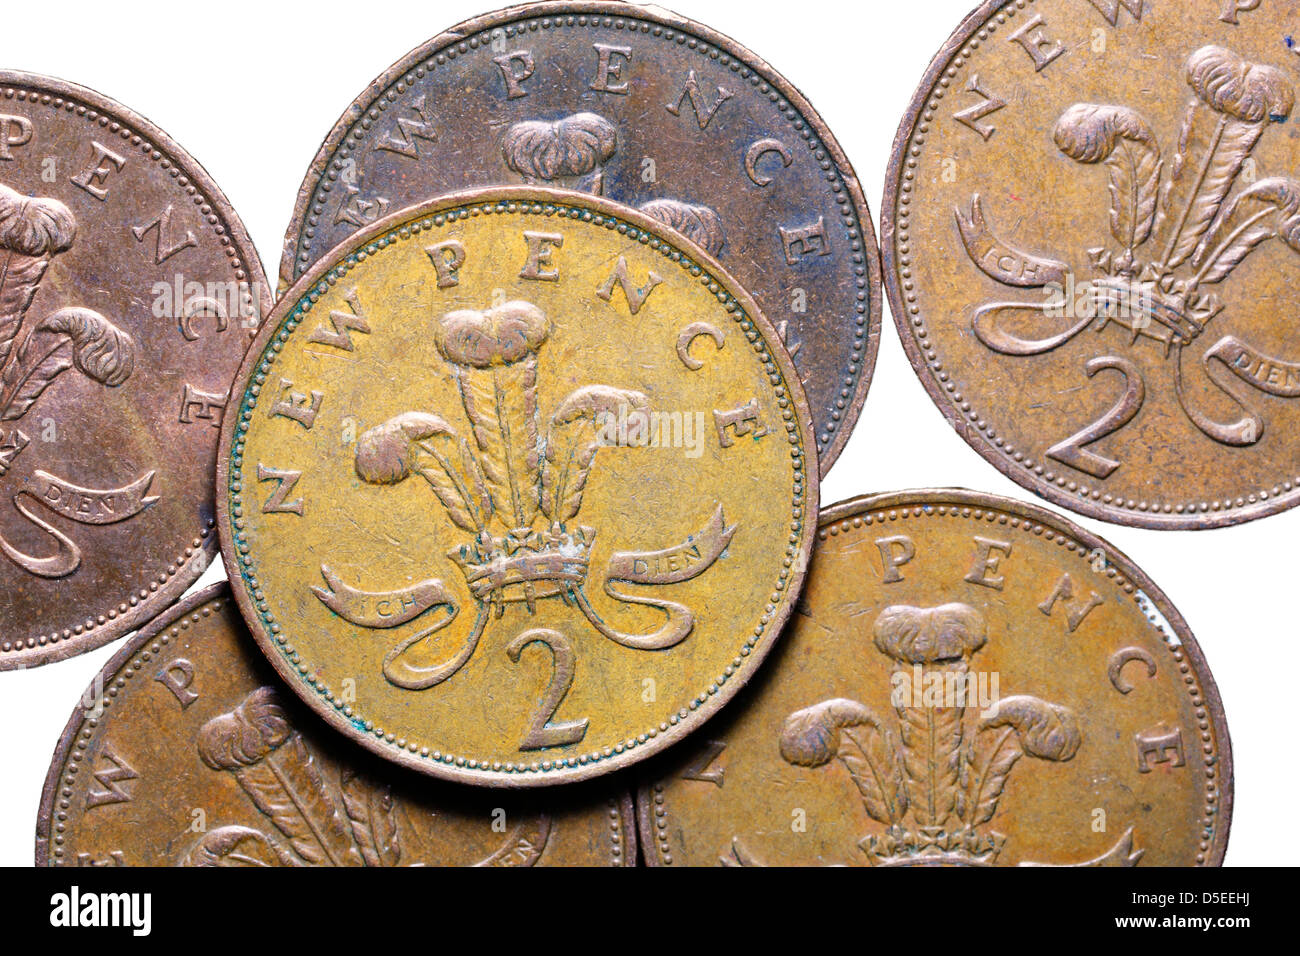 Pile de 2 pence coins, UK, sur fond blanc Banque D'Images